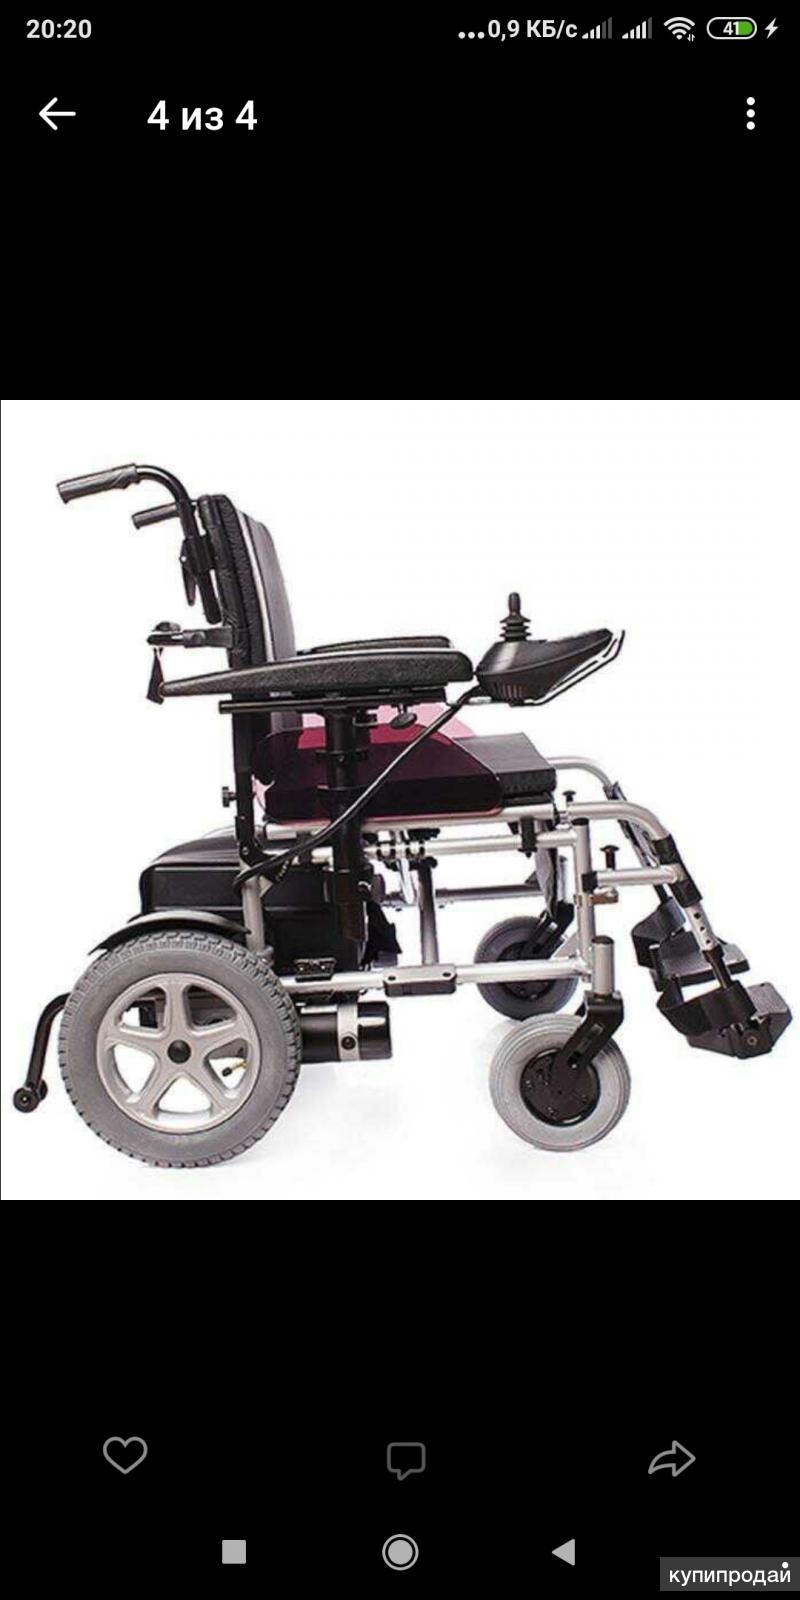 Гост р 58507 2019 кресла коляски с электроприводом и скутера общие технические условия